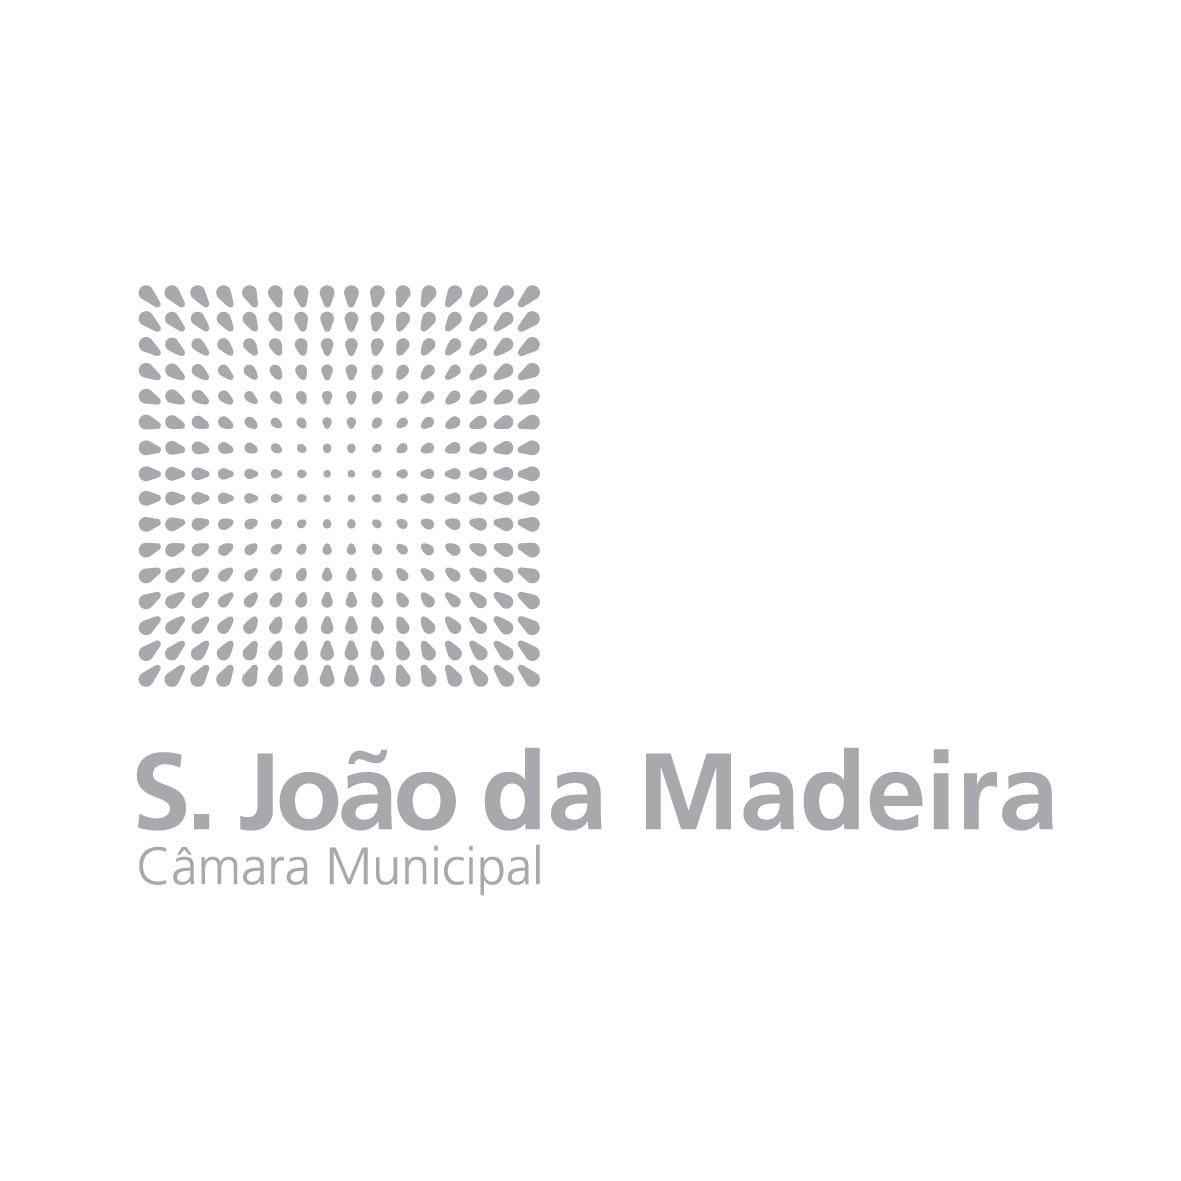 Câmara Municipal de S. João da Madeira 